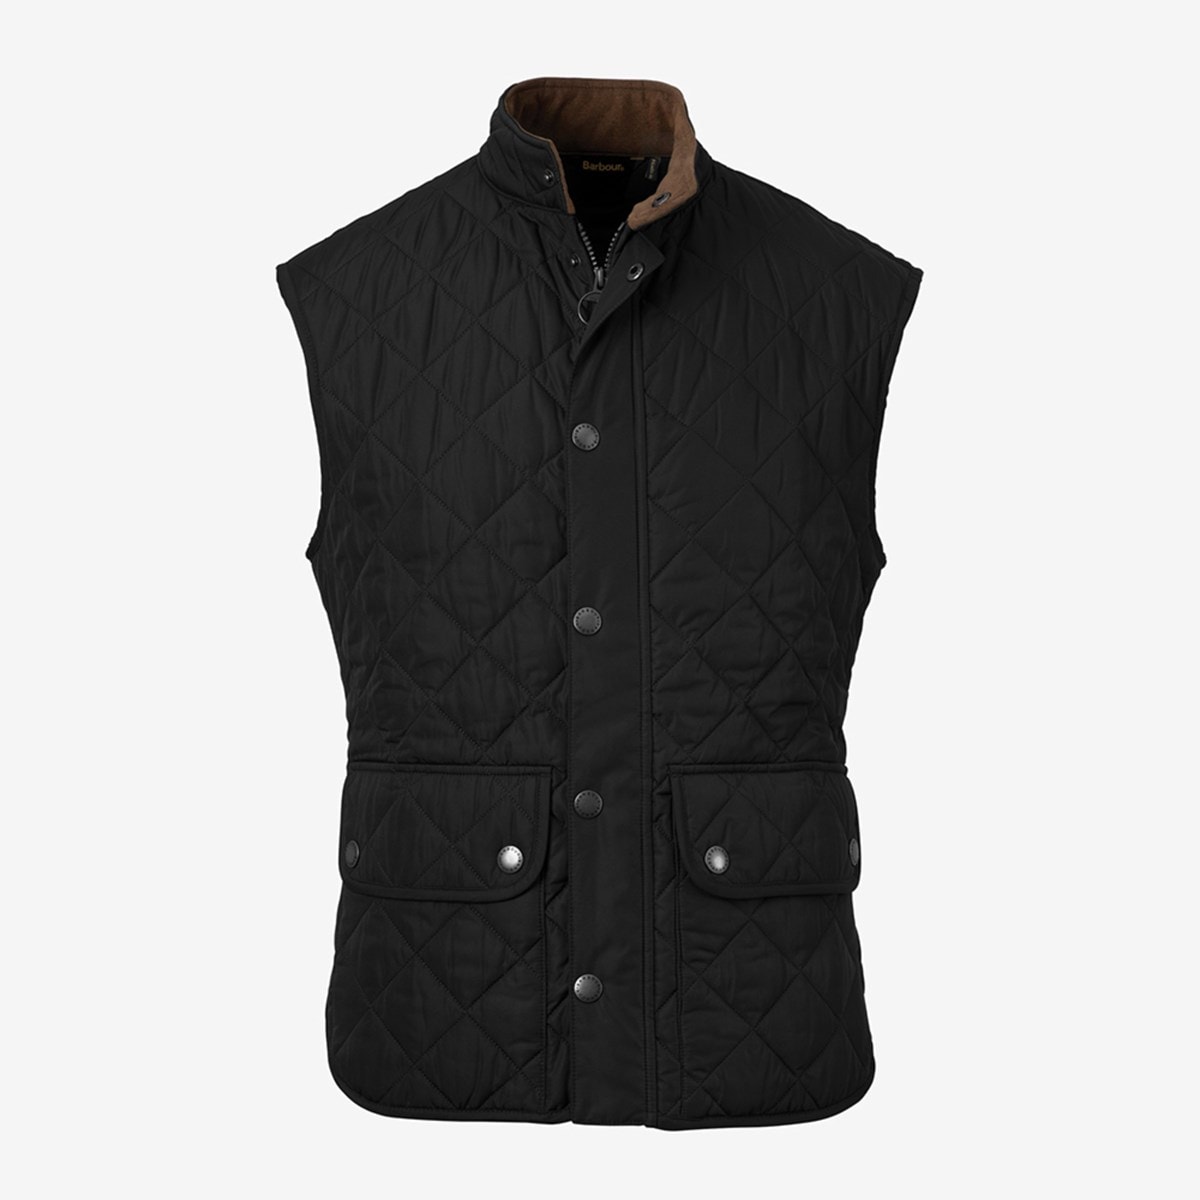 Barbour Lowerdale Gilet Vest Outerwear | Allen Edmonds